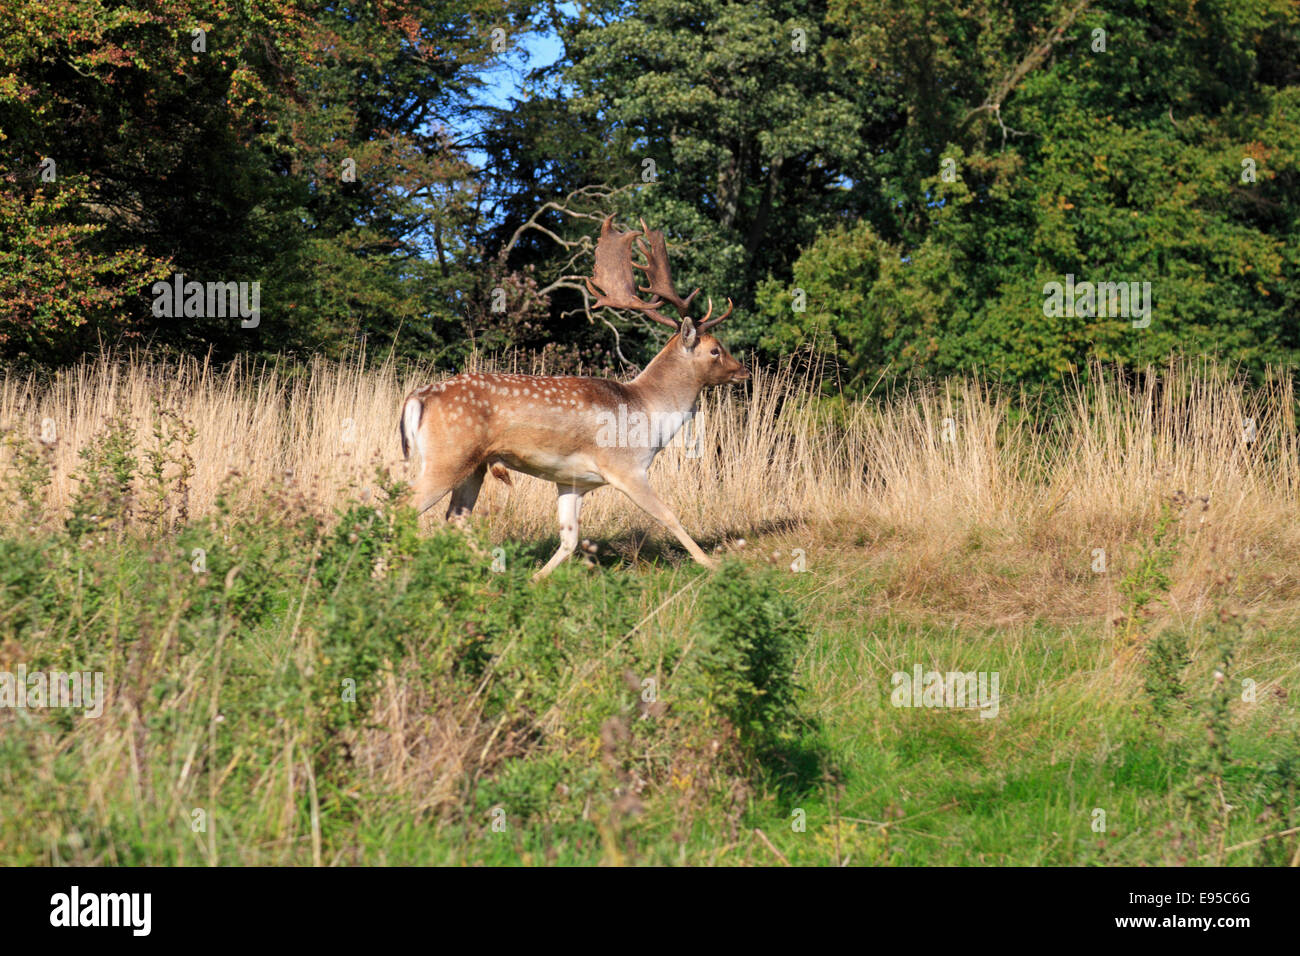 El gamo, el Ciervo Dama dama, en Parkland Stainborough, Barnsley, al sur de Yorkshire, Inglaterra, Reino Unido. Foto de stock